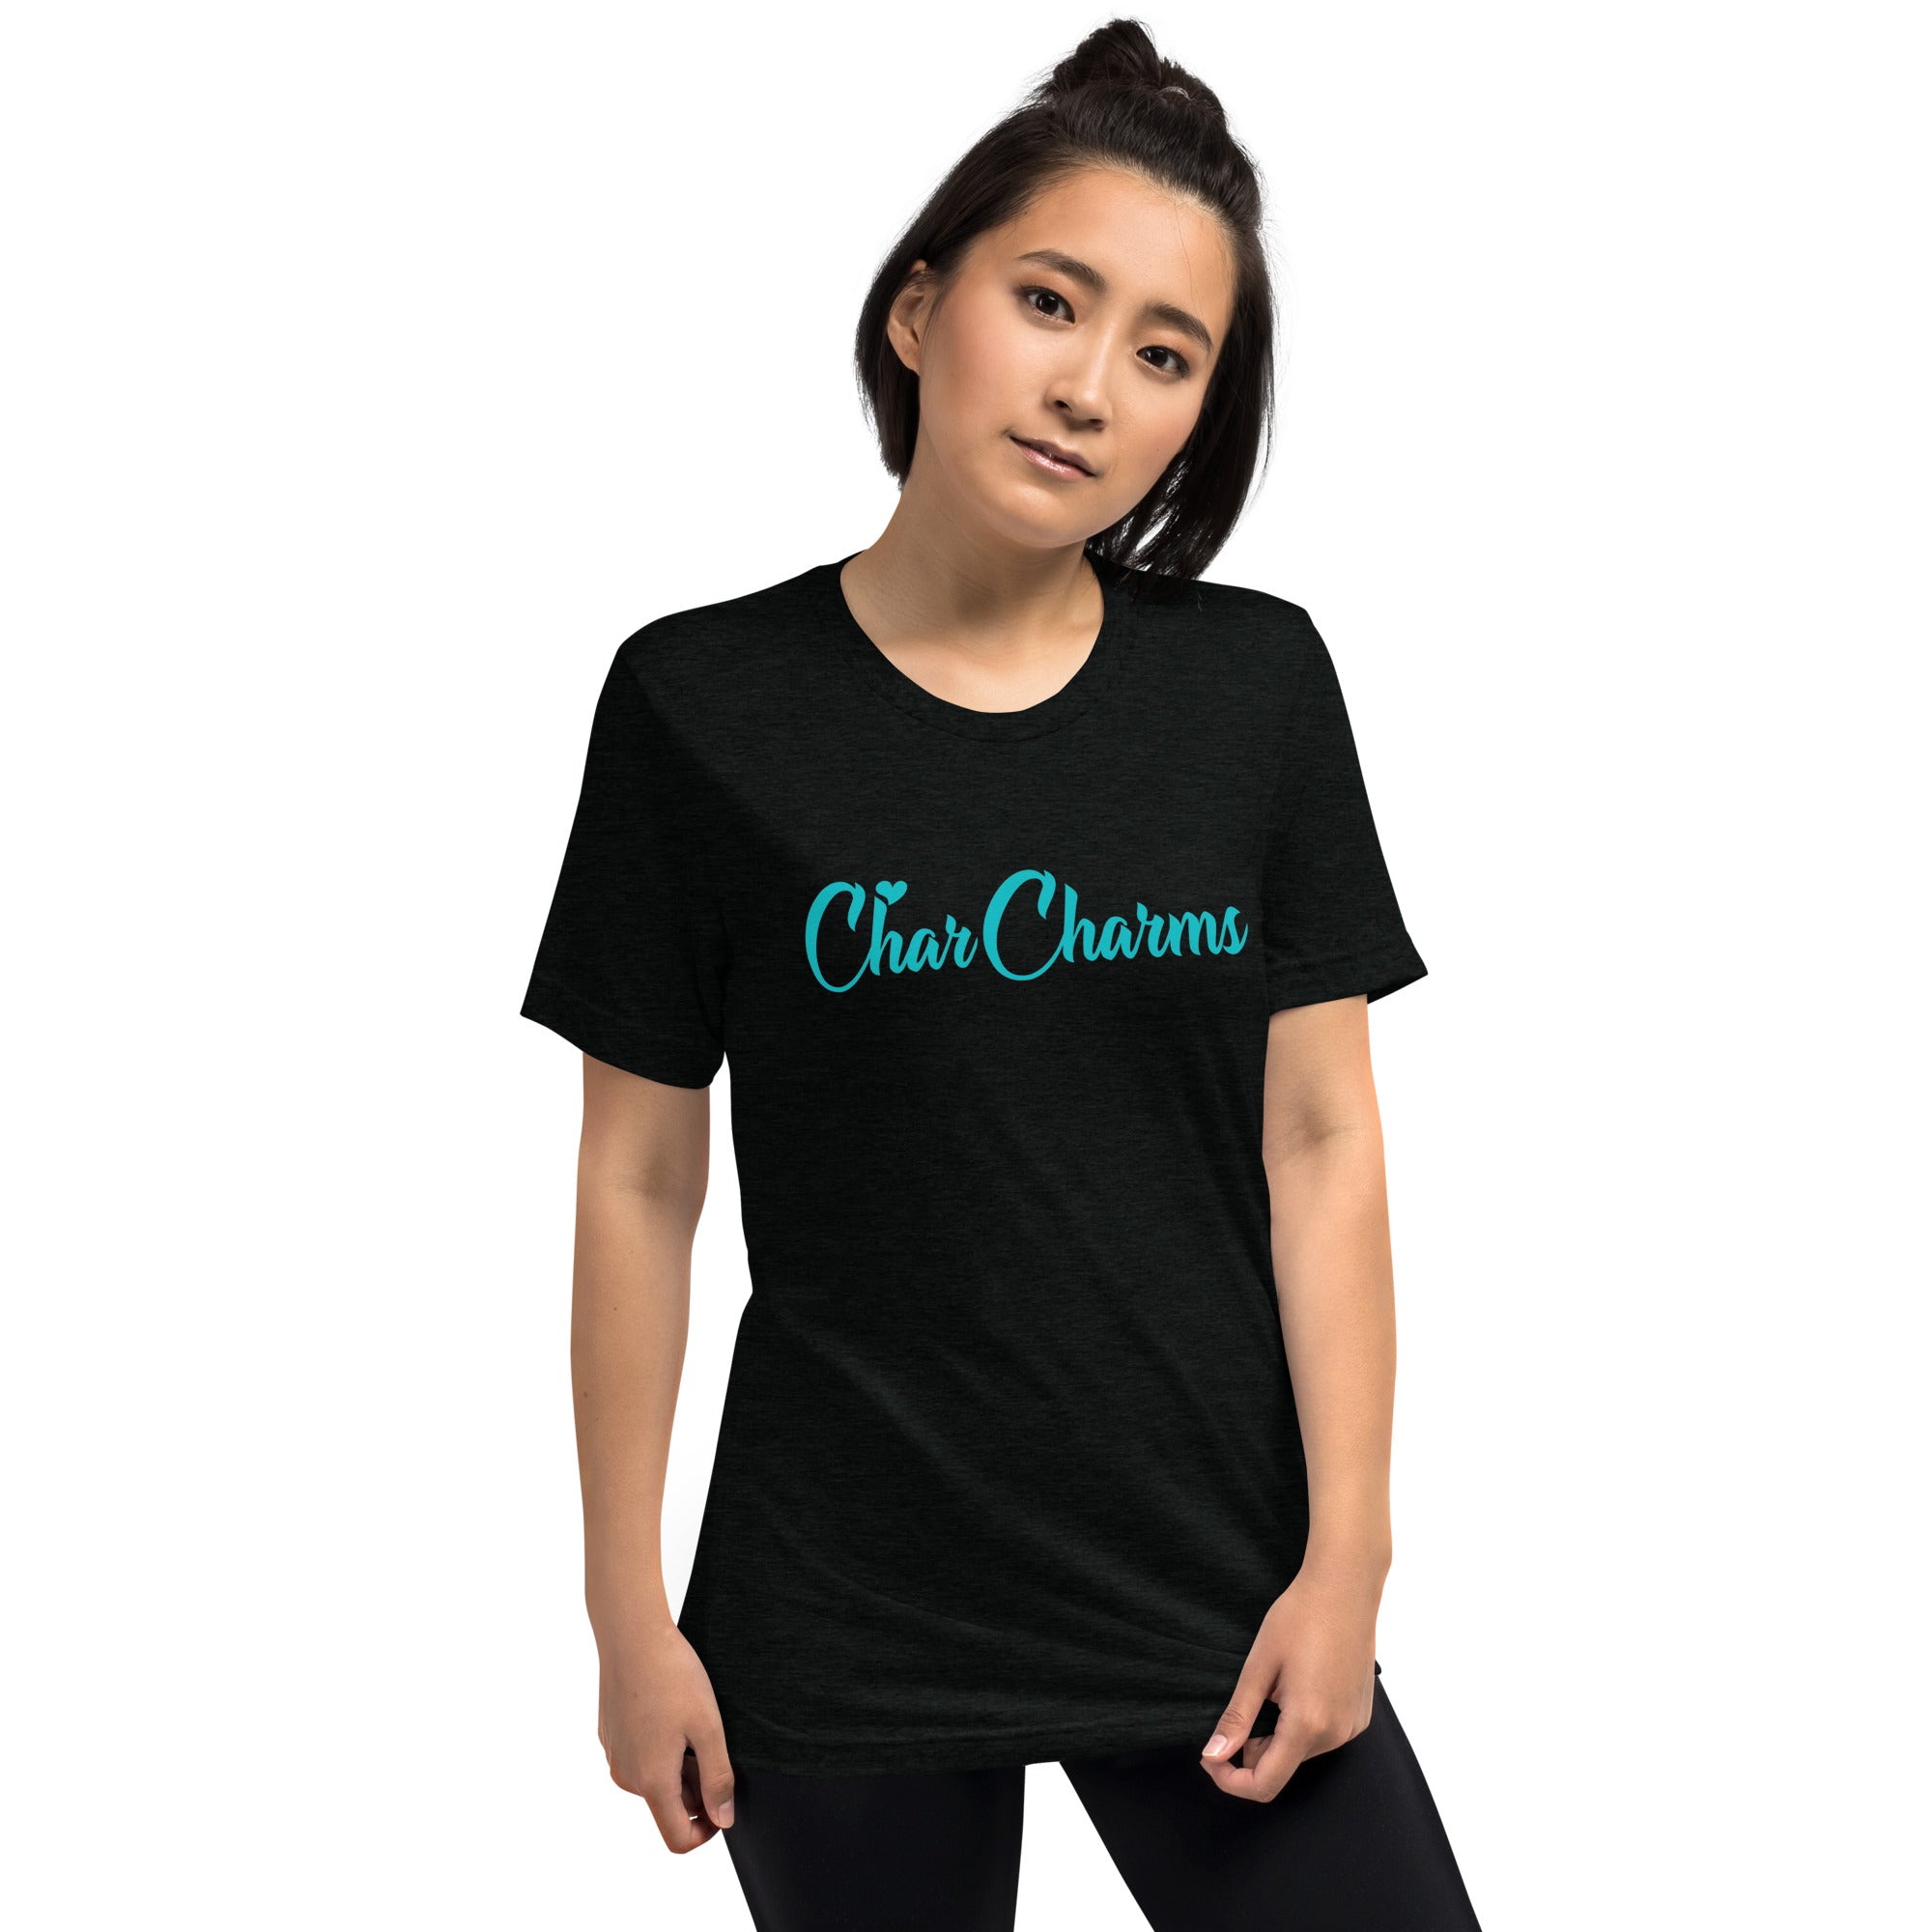 CharCharms Merchandise Black Teeshirt tshirt